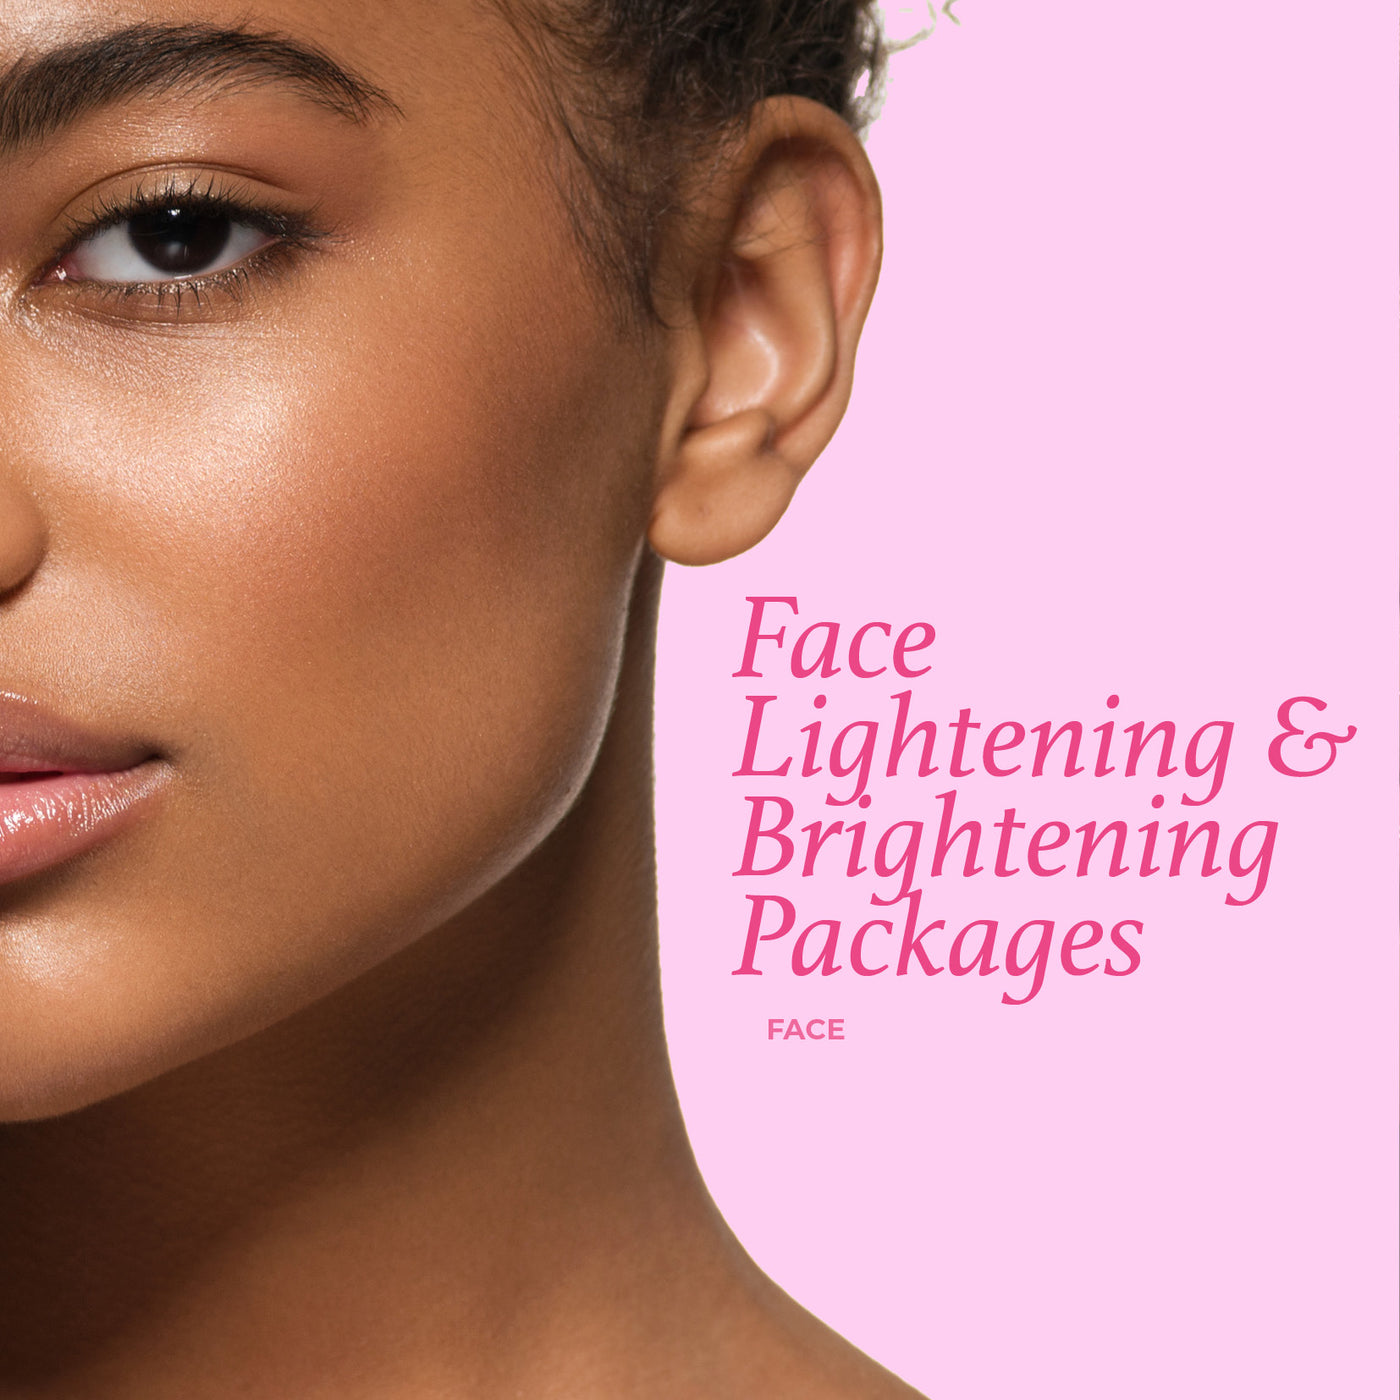 Face Lightening & Brightening Package - Face